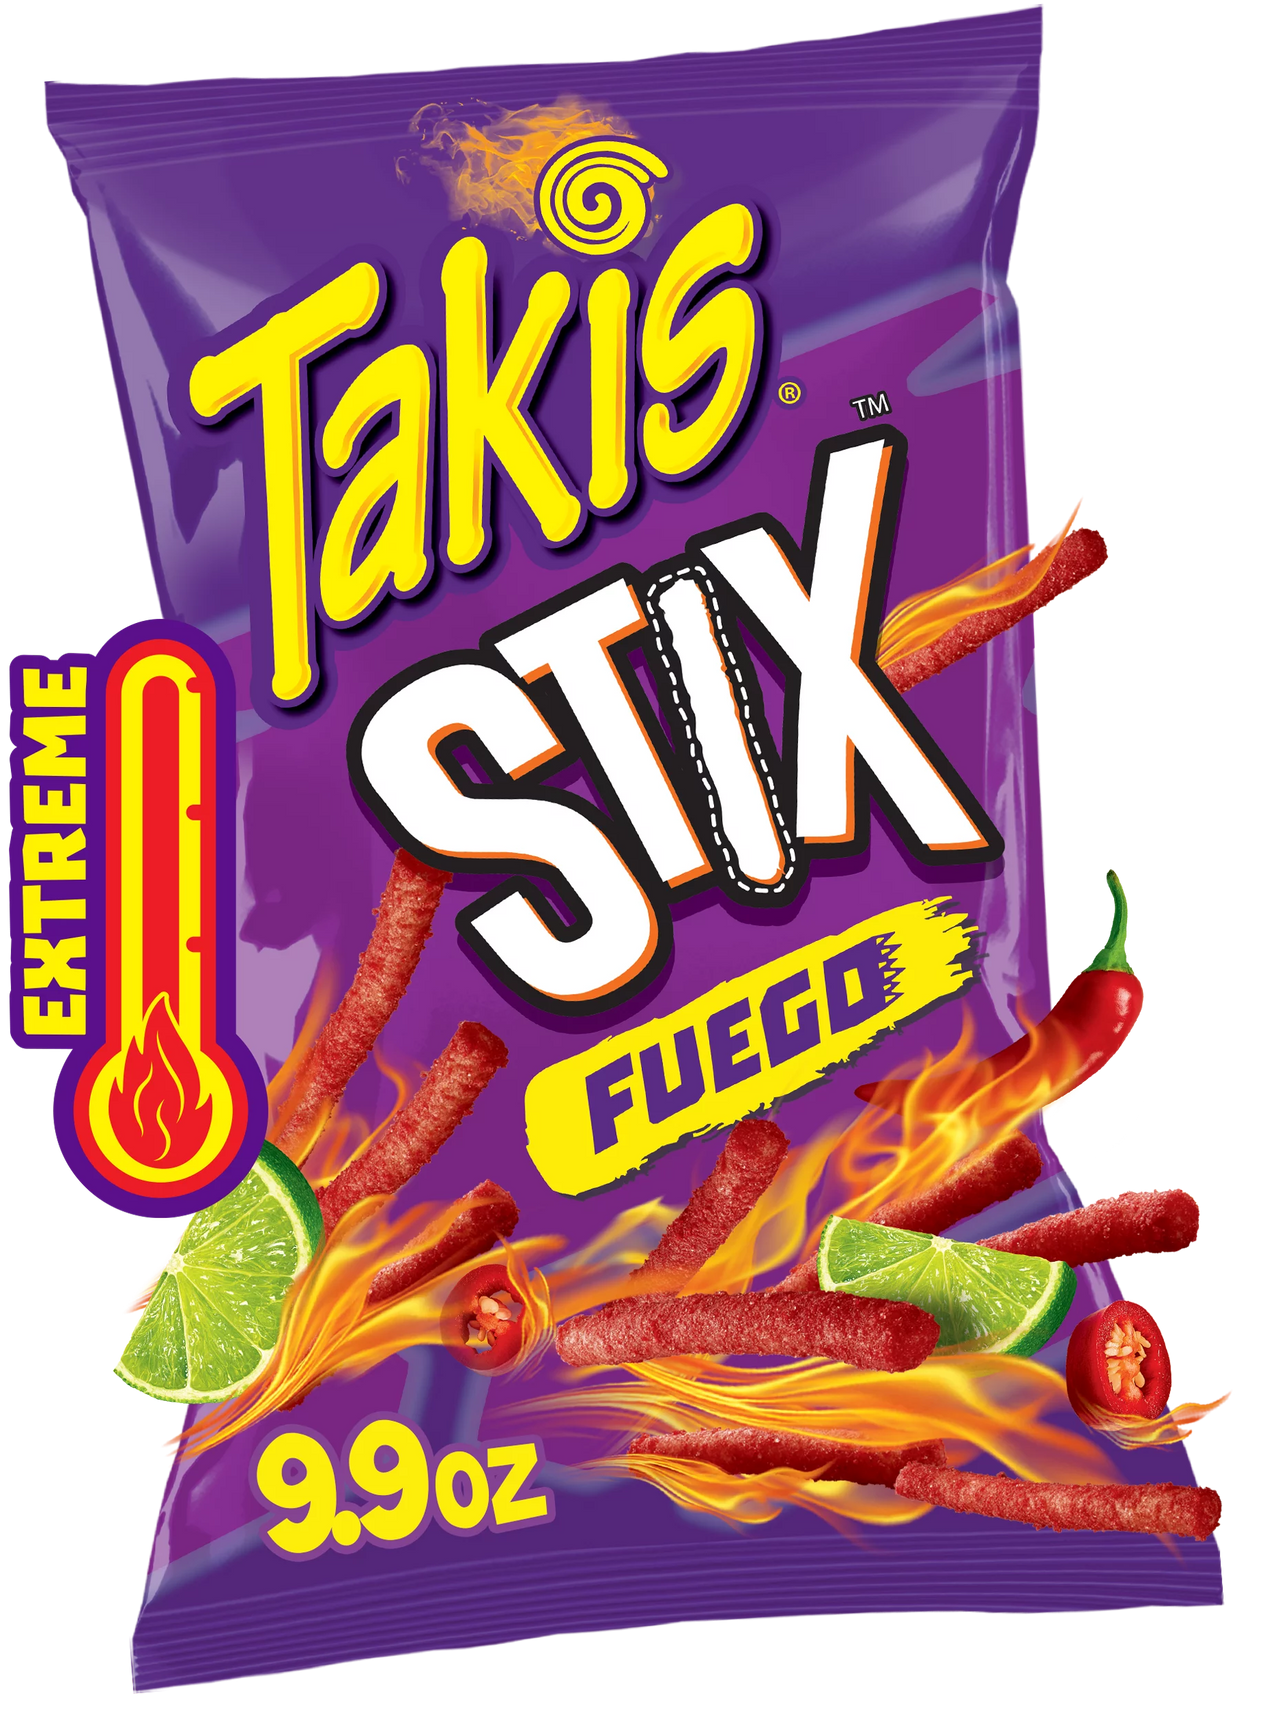 Takis Stix Fuego